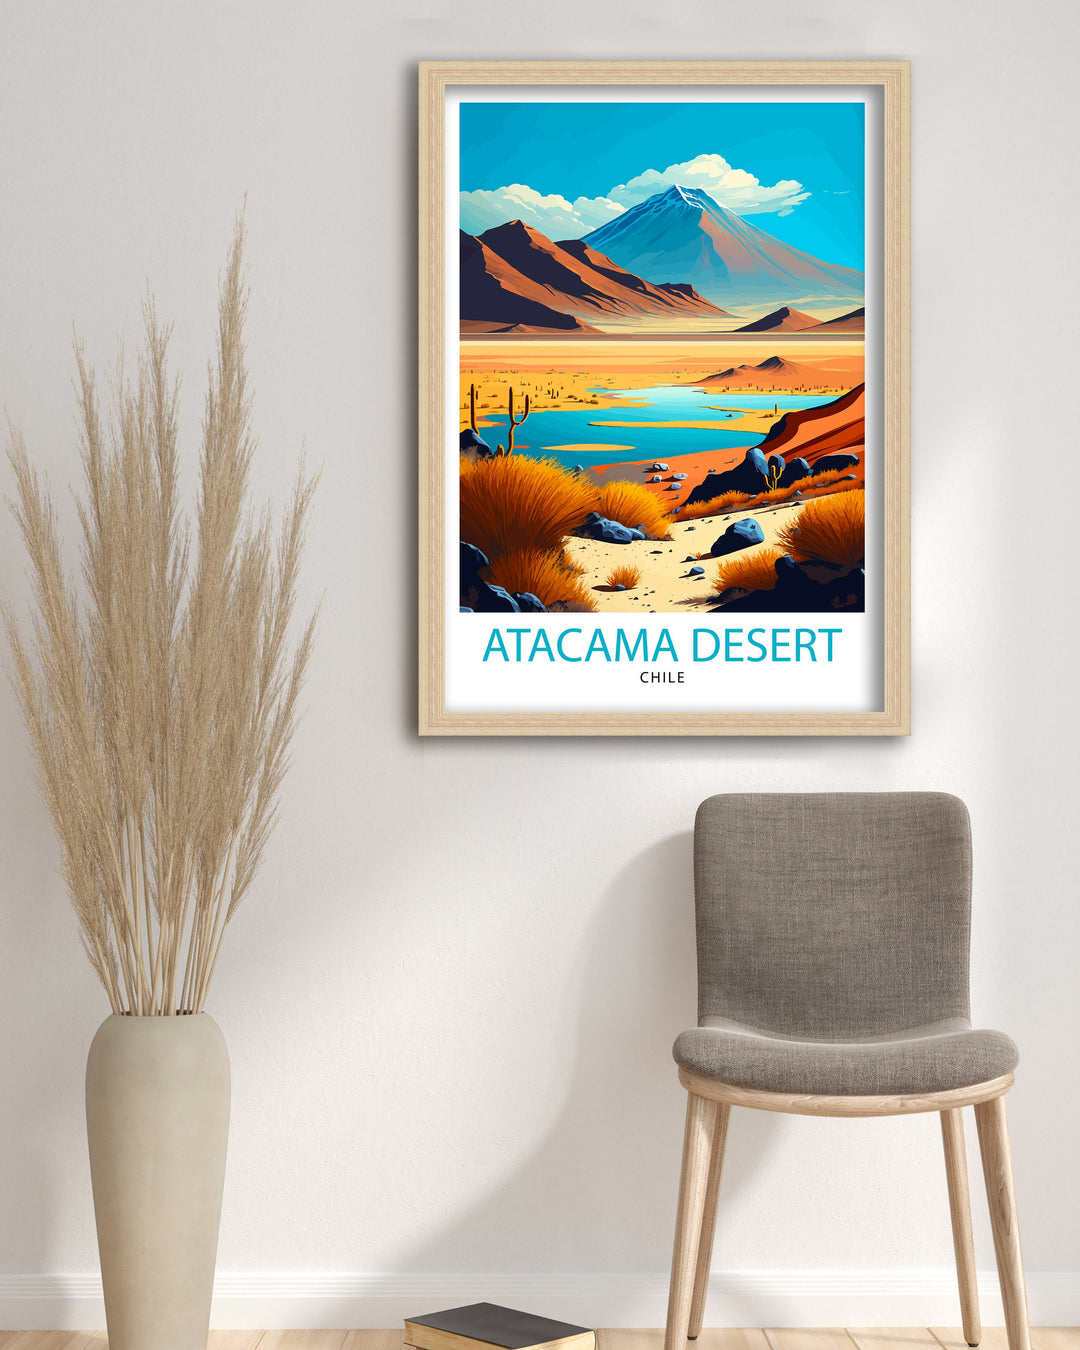 Atacama Desert Travel Poster Atacama Wall Art Atacama Home Decor Atacama Chile Illustration Atacama Travel Poster Gift For Traveler Atacama